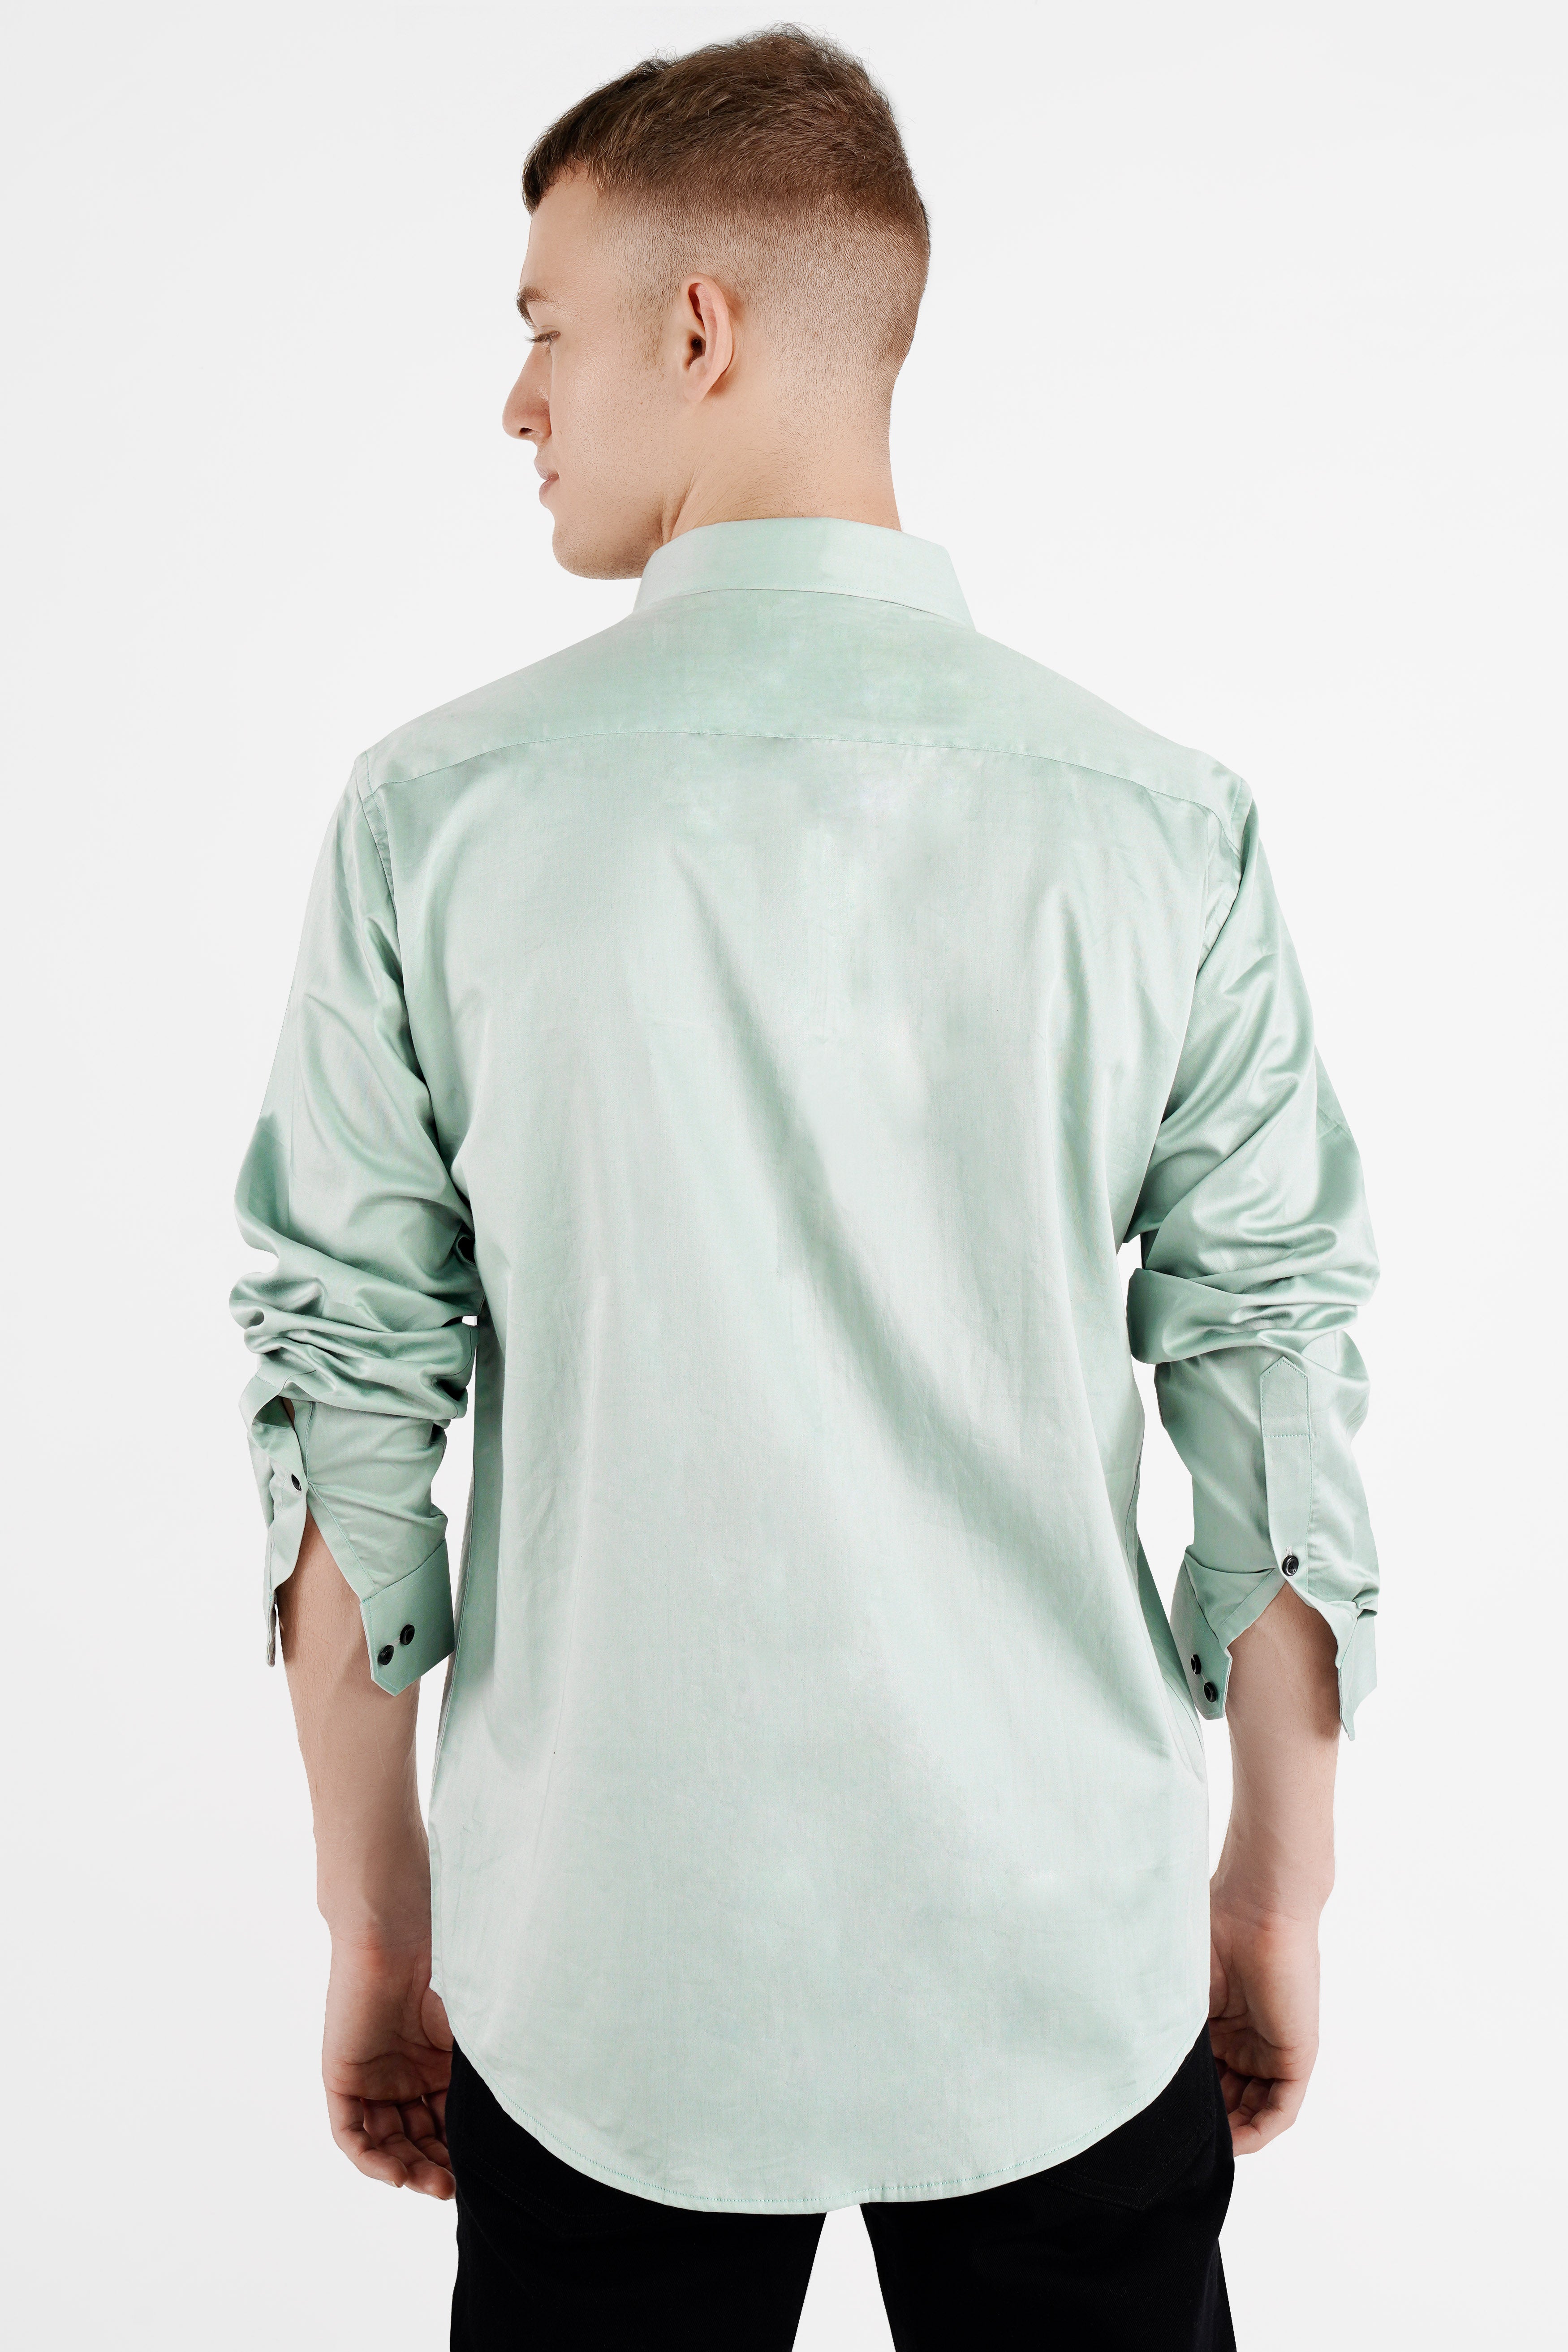 Periglacial Green Subtle Sheen Super Soft Premium Cotton Shirt